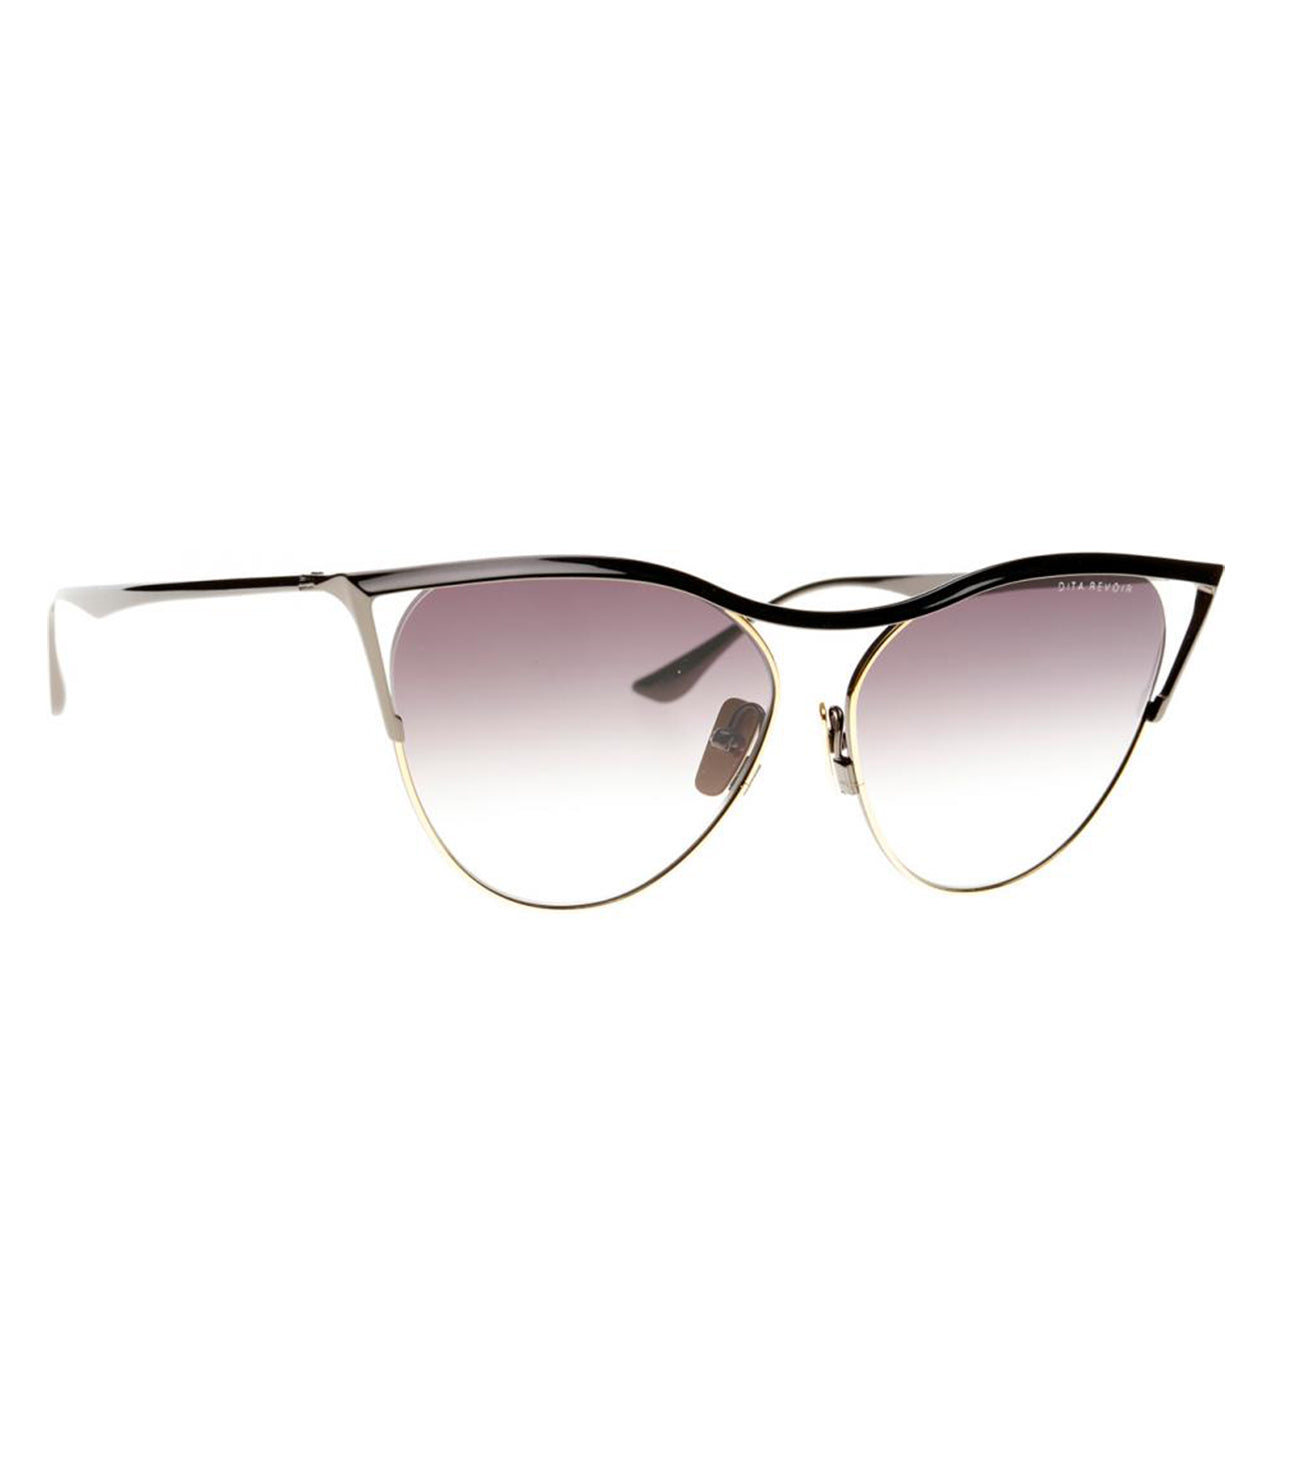 Dita Revoir Women's Grey Butterfly Sunglasses